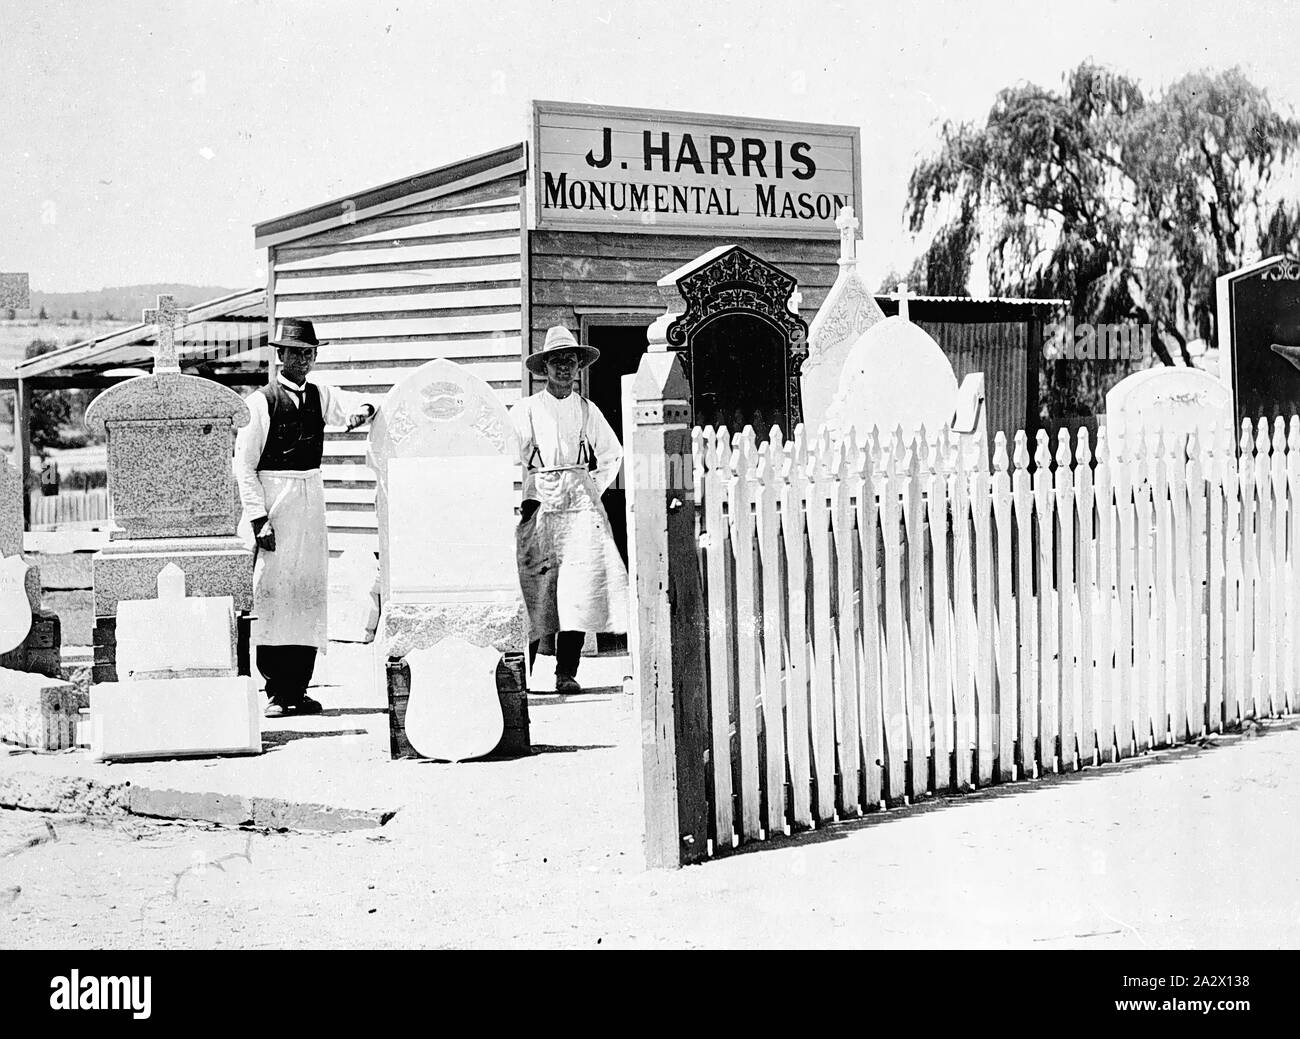 Negativo - Bendigo, Victoria, circa 1910, i lavoratori del cantiere di J. Harris, monumentale Mason Foto Stock